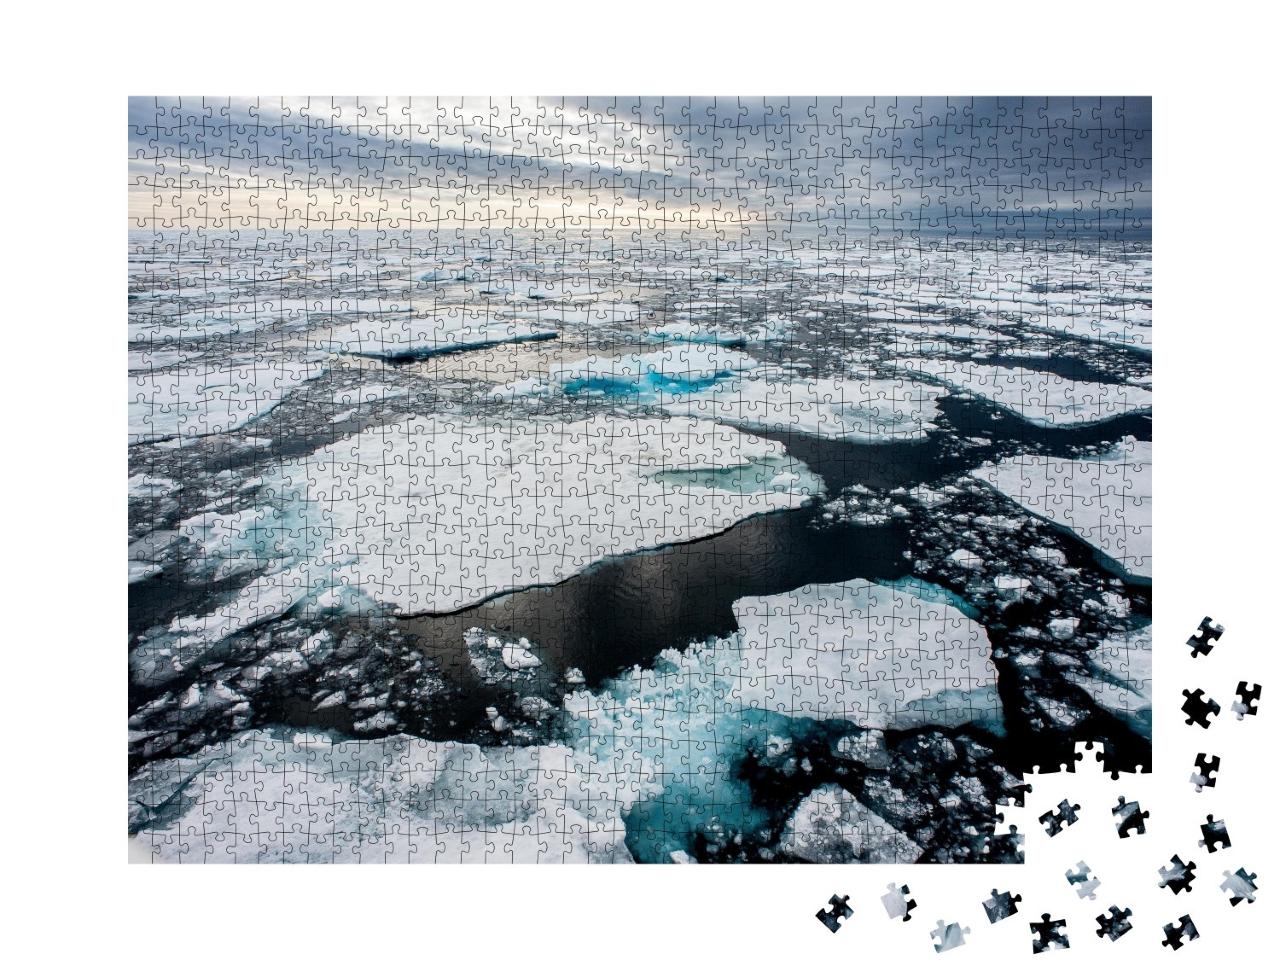 Puzzle de 1000 pièces « Panneaux de glace dans l'Arctique »